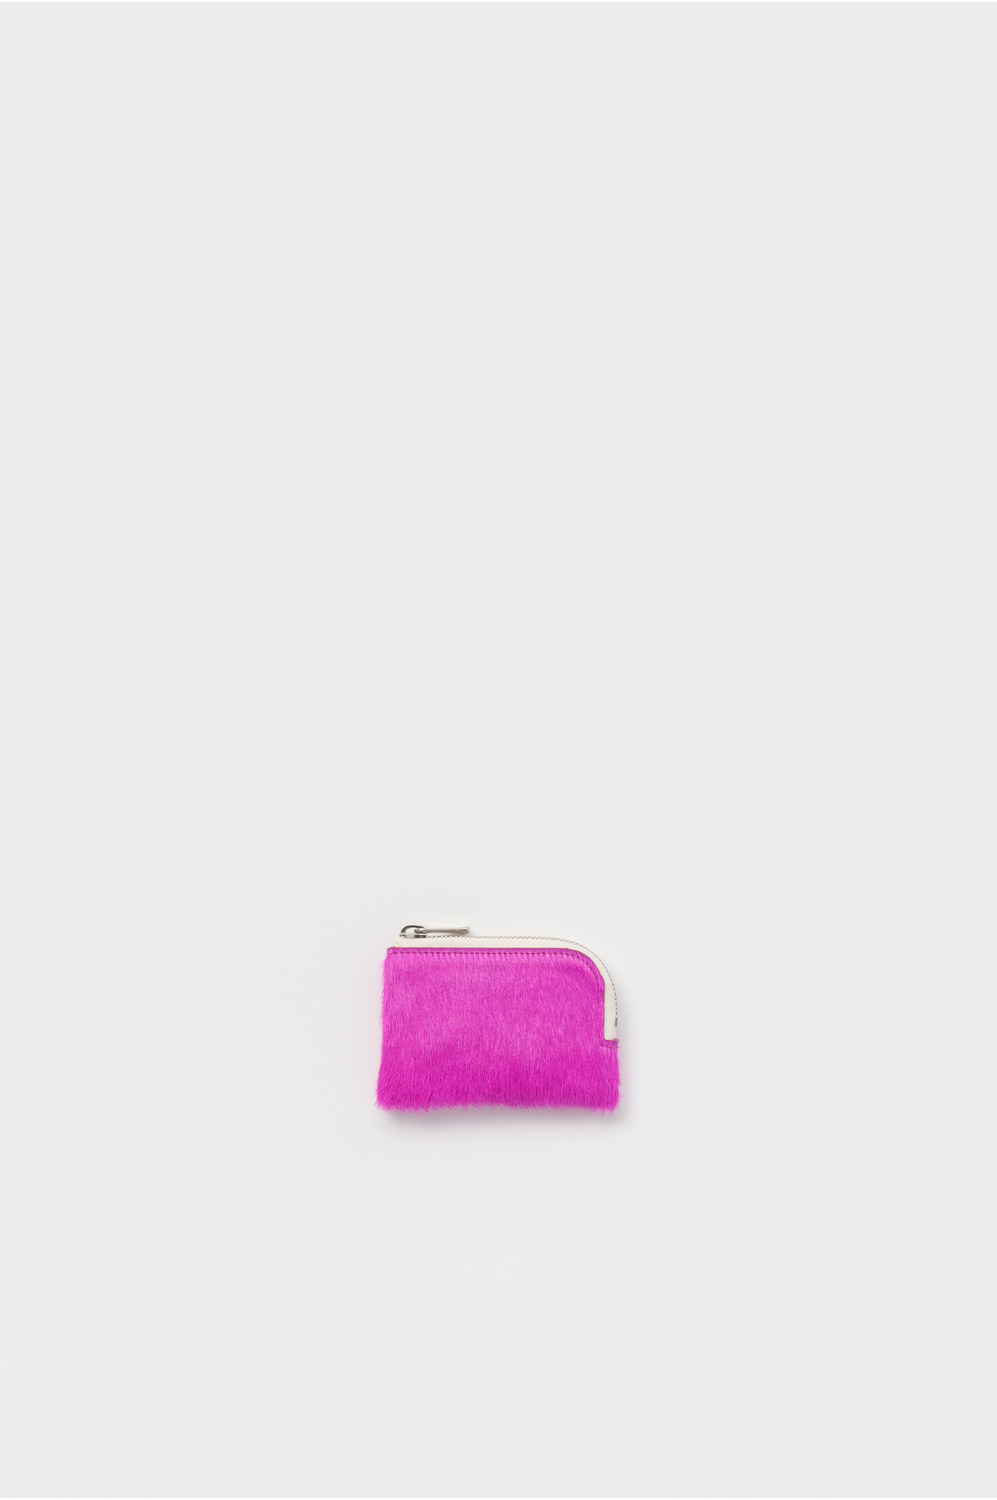 hairy L multi card case 詳細画像 pink purple 1